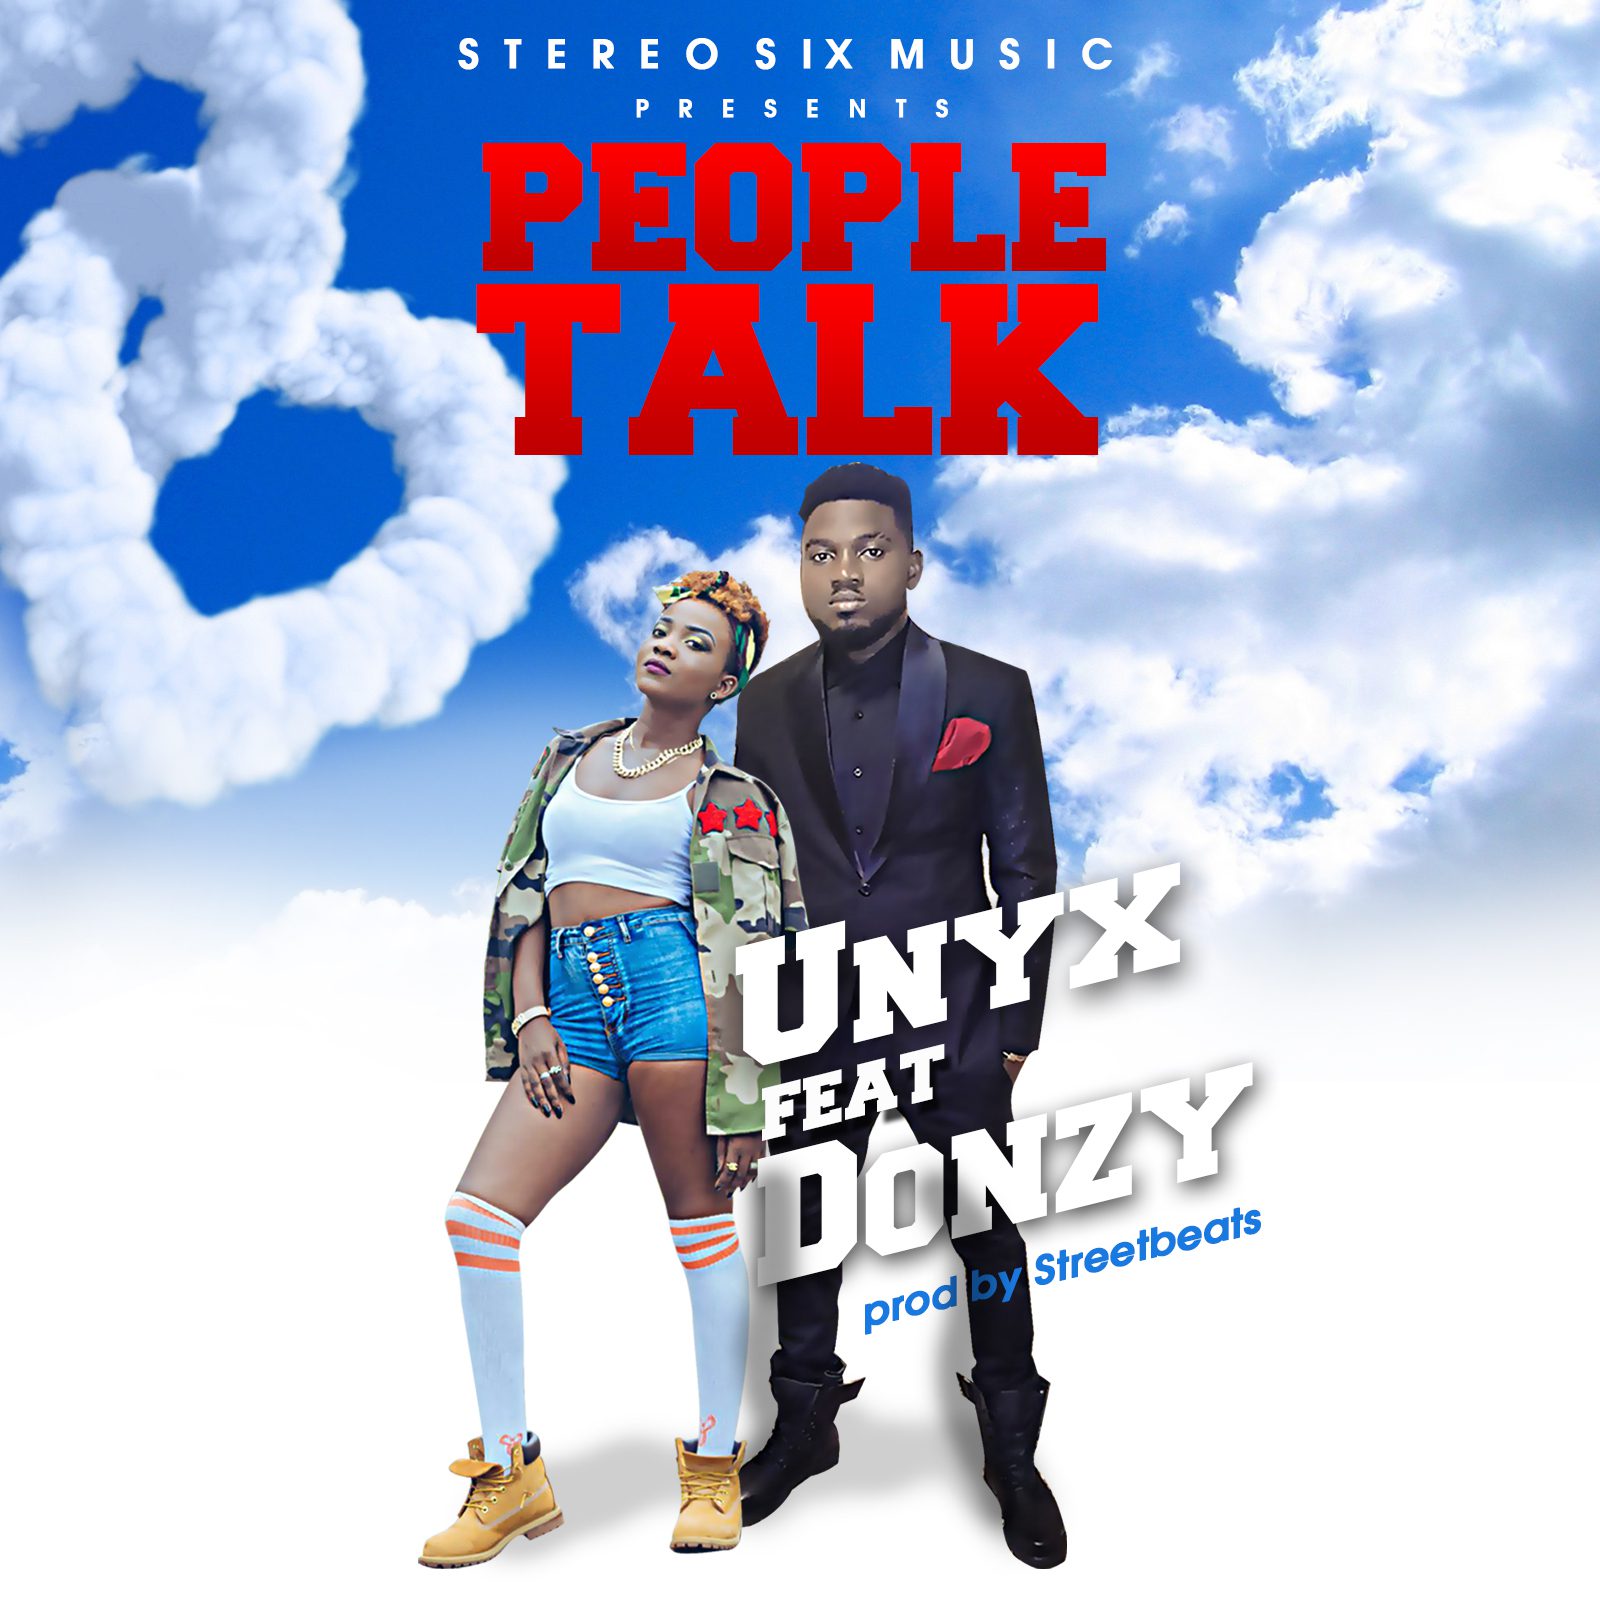 Unyx ft Donzy – People Talk (Prod. by Streatbeatz)